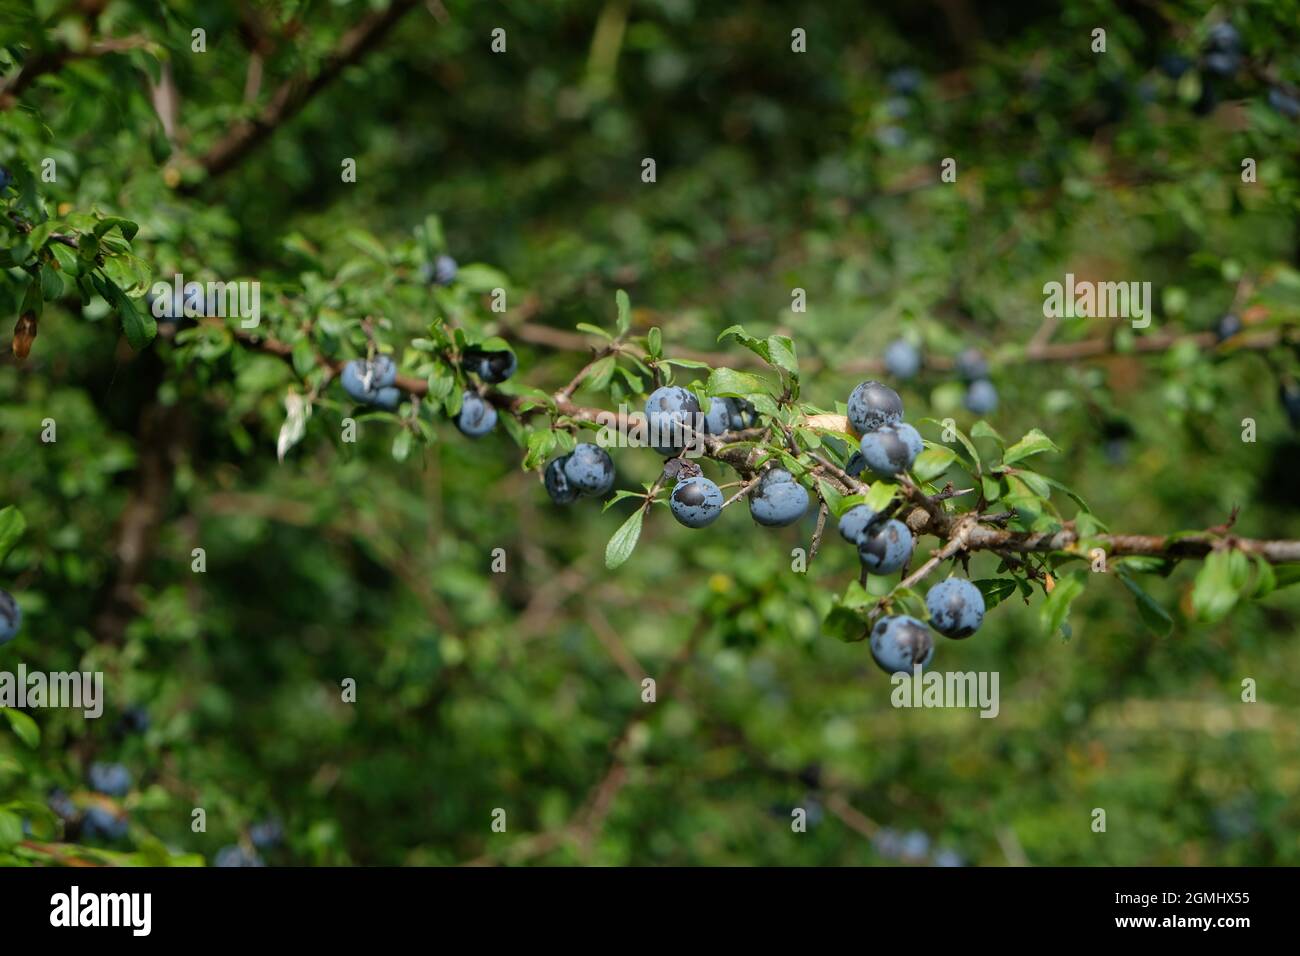 Bacche di sloe mature su un albero di nero - Prunus spinosa. La frutta è utilizzata per la produzione di sloe gin Foto Stock